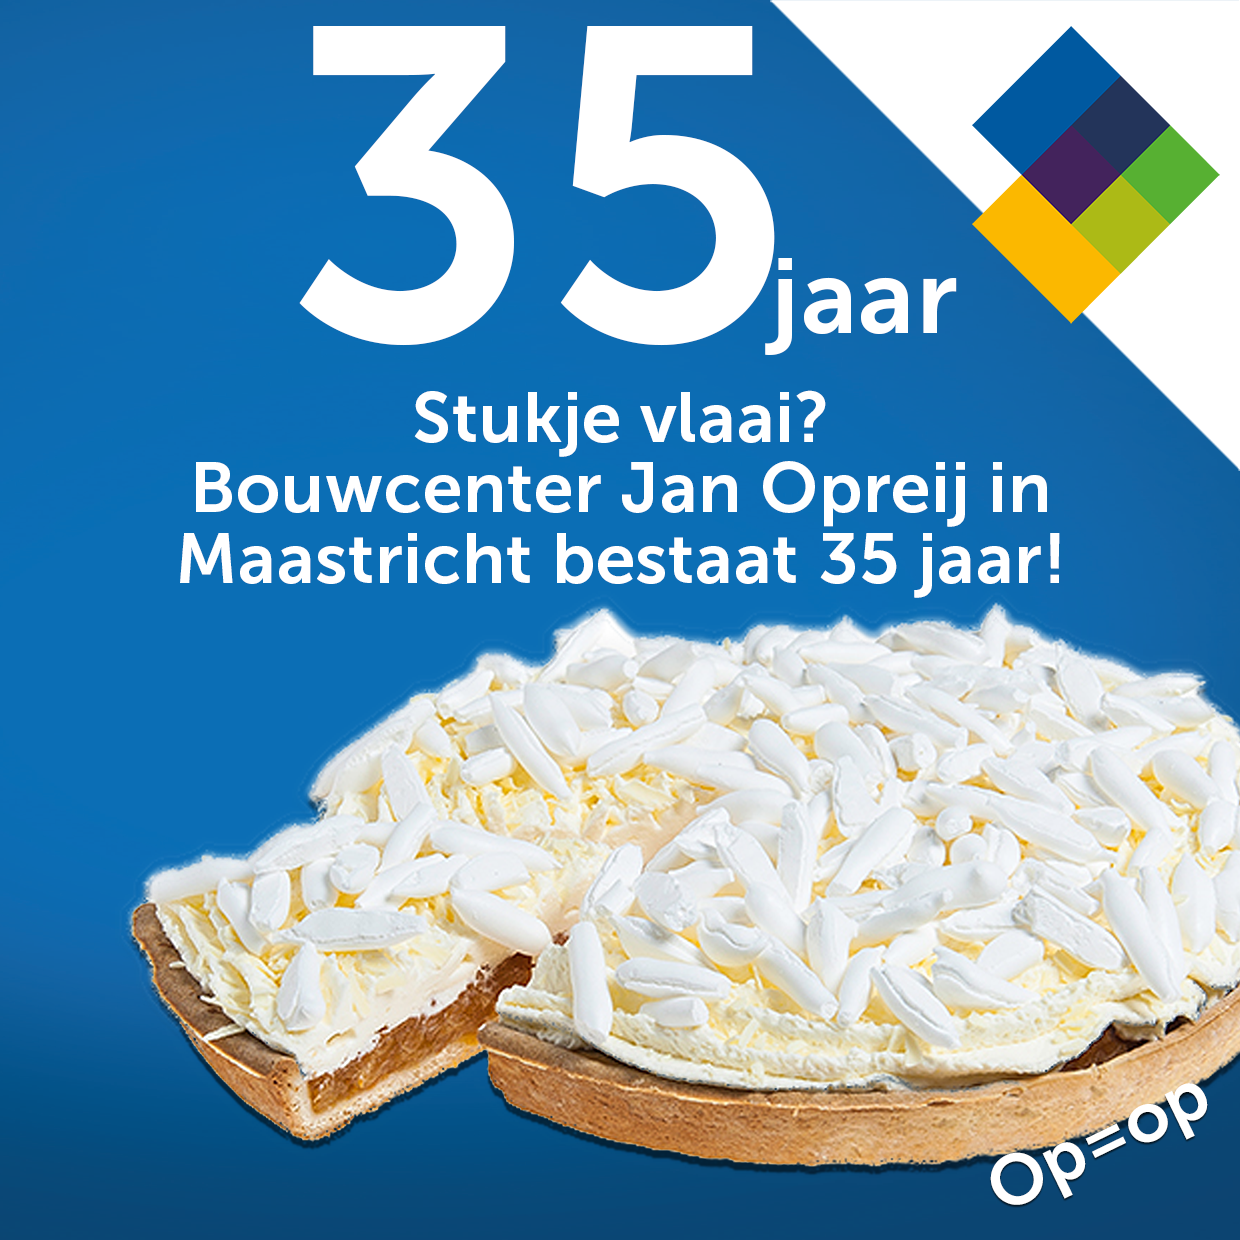 Bouwcenter Jan Opreij Maastricht: 35 jaar!